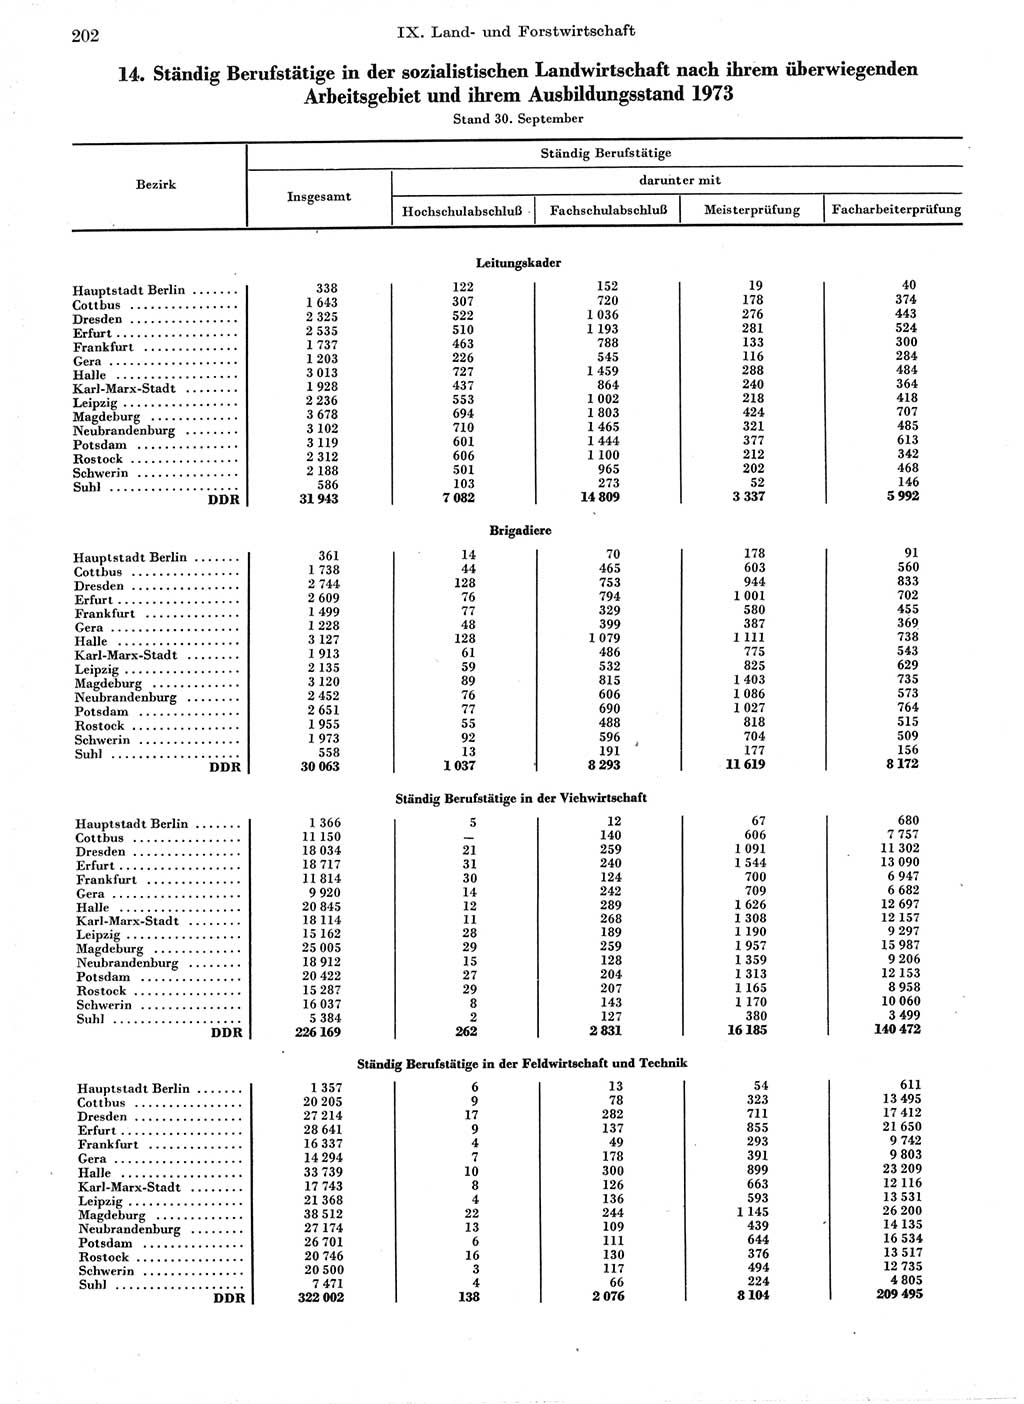 Statistisches Jahrbuch der Deutschen Demokratischen Republik (DDR) 1974, Seite 202 (Stat. Jb. DDR 1974, S. 202)